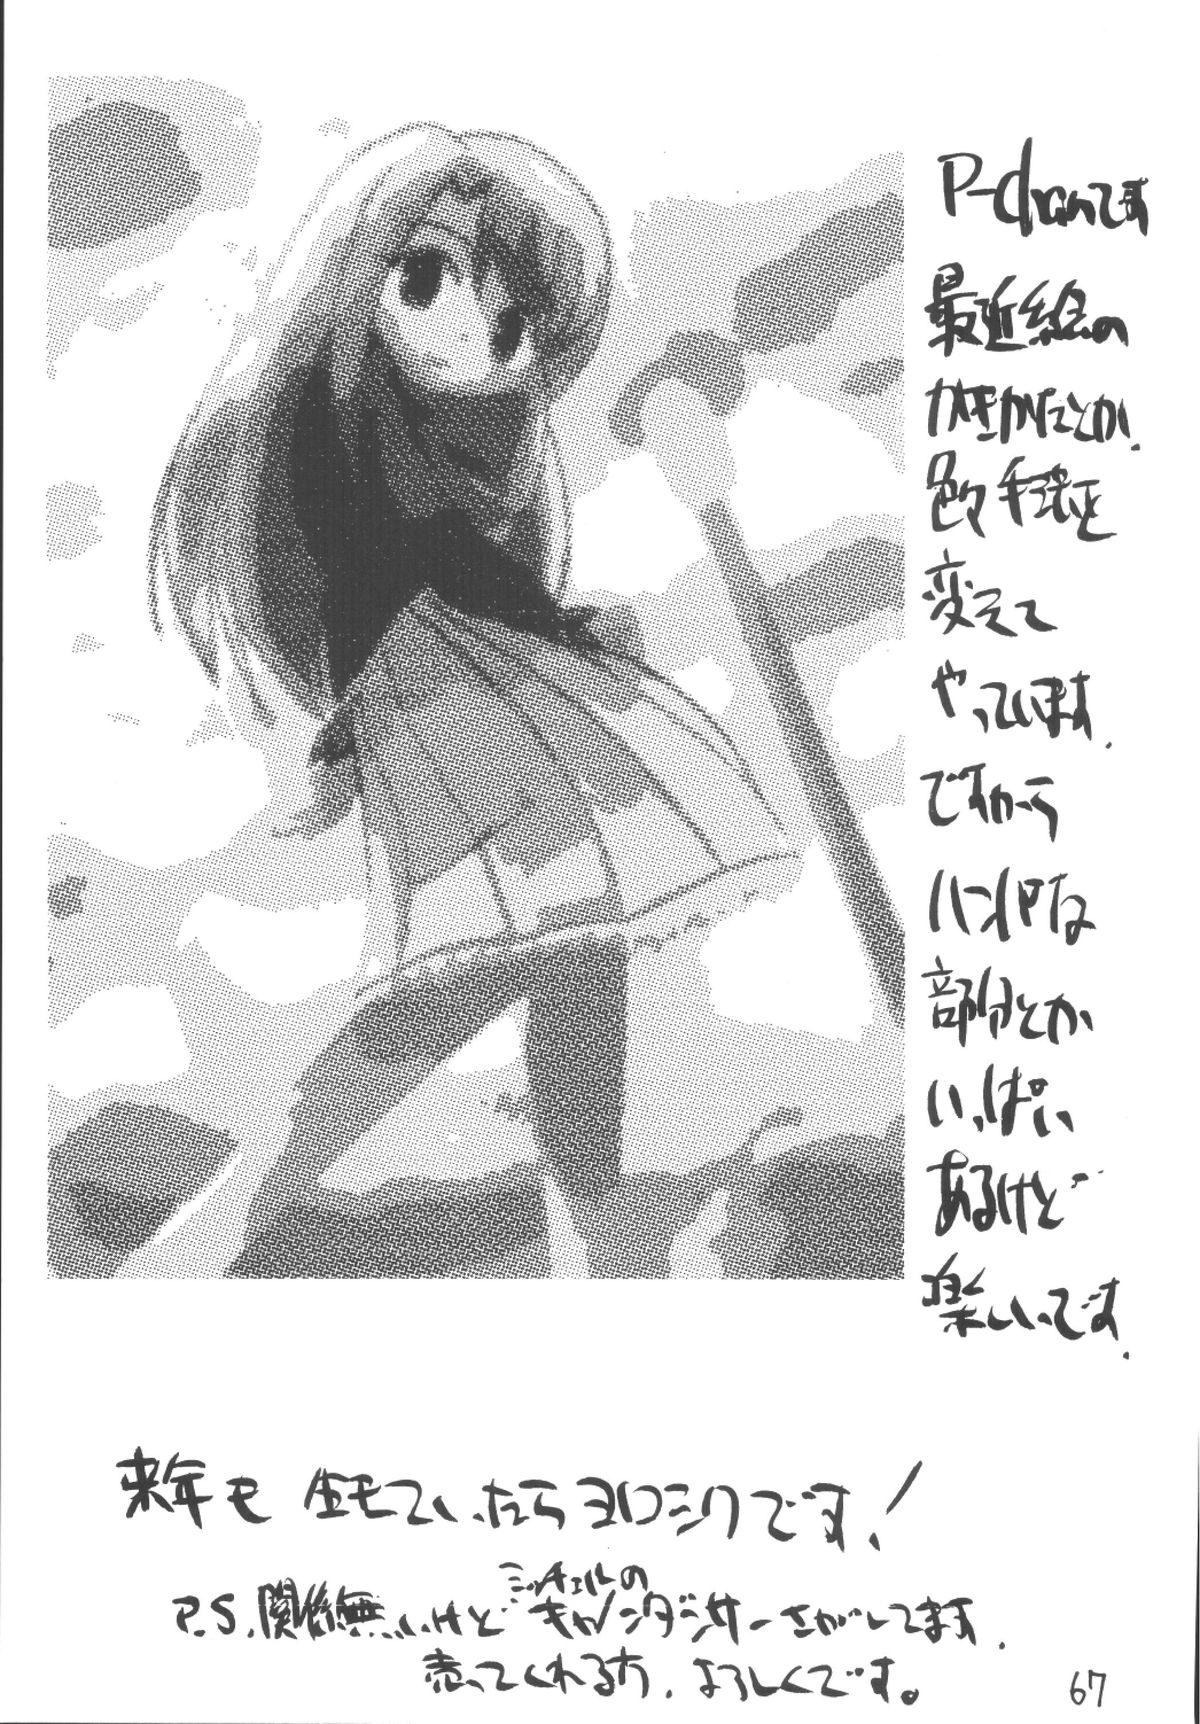 [浅野屋 (よろず)] Senti metal girl vol.2 (Fate/stay night) [DL版]